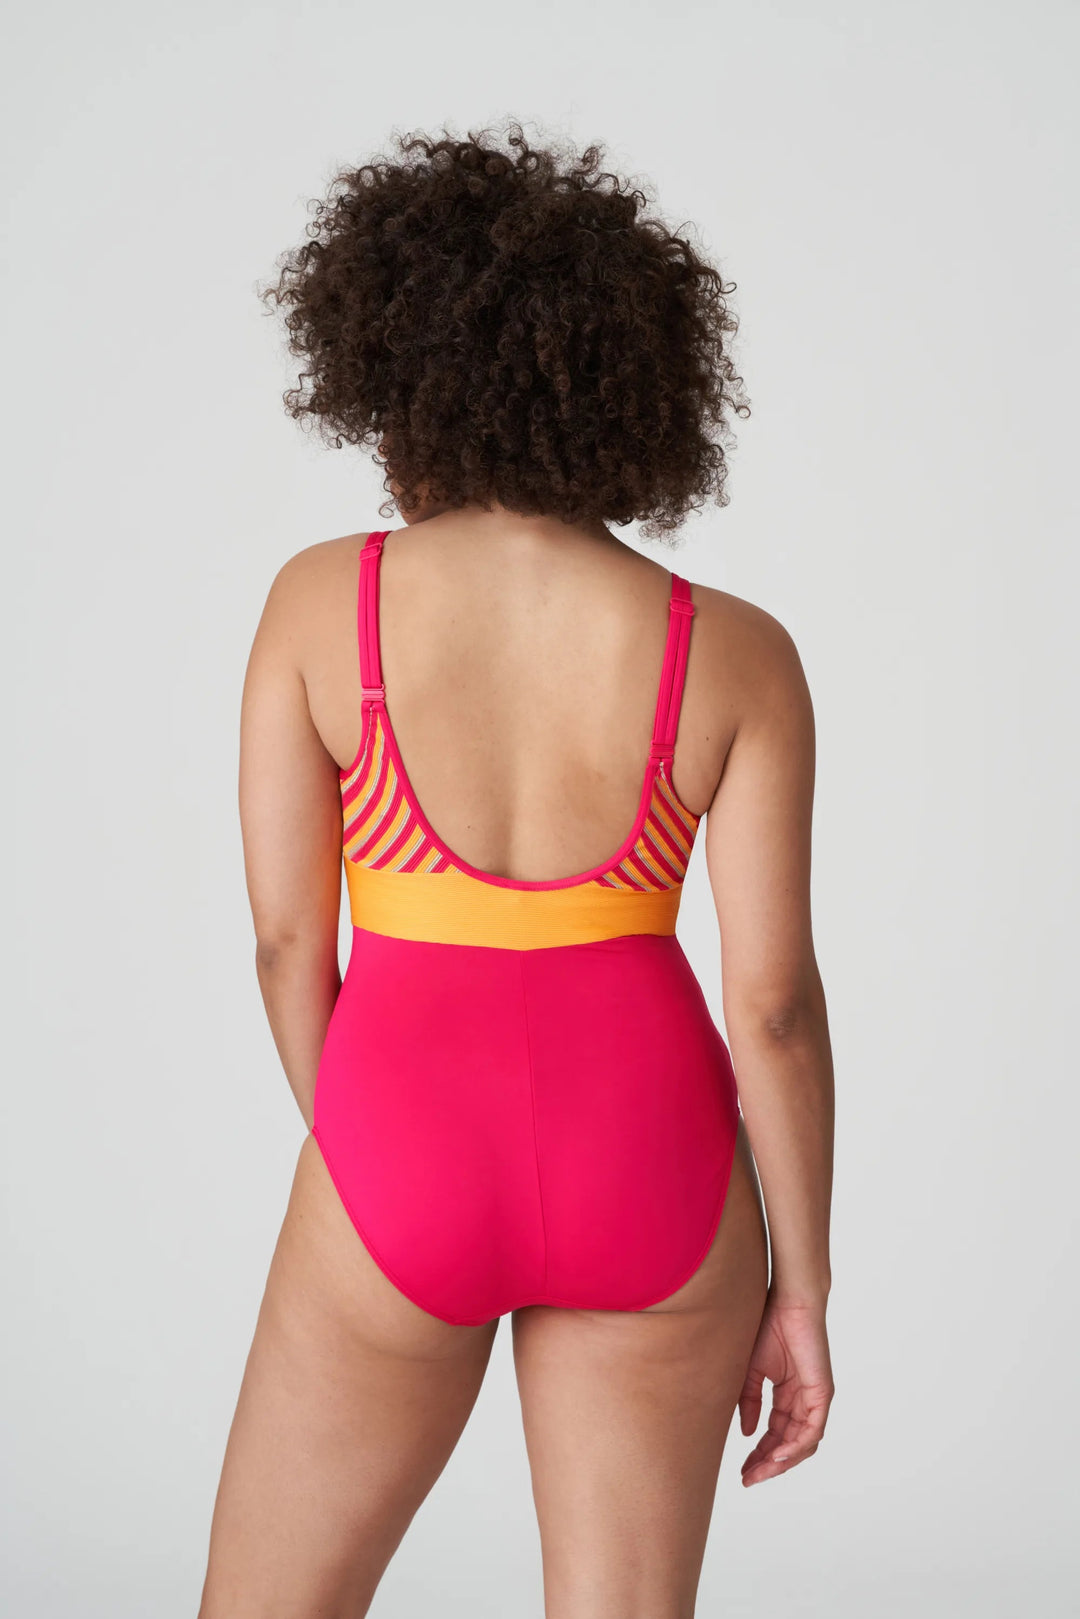 PrimaDonna Swimwear La Concha 软垫泳衣 Wireless - Mai Tai 软垫泳衣 PrimaDonna Swimwear